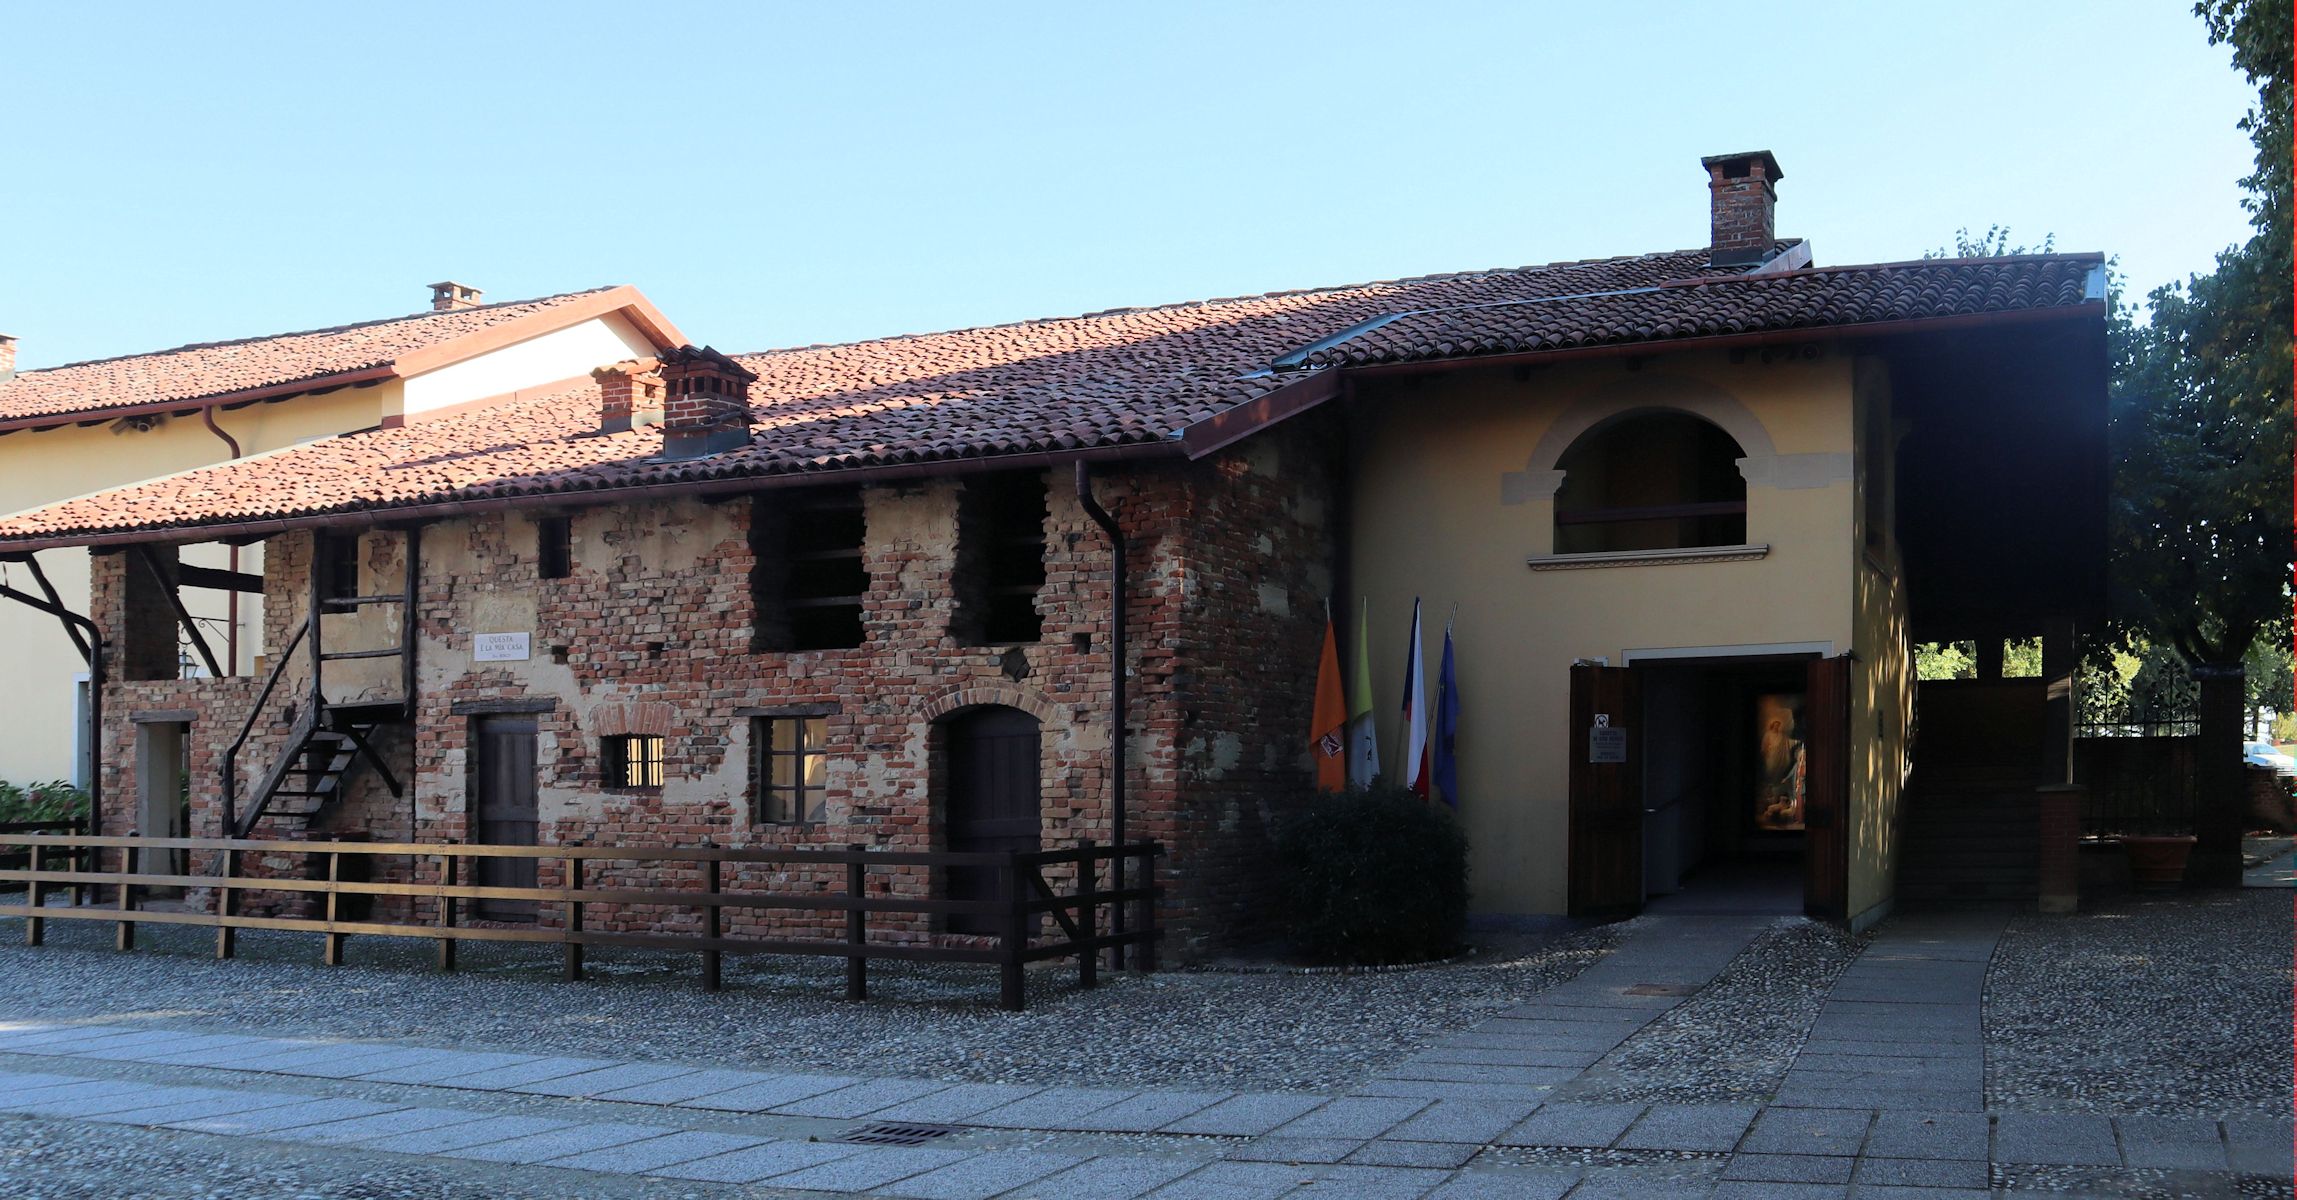 Geburtshaus von Johannes in Becchi, heute Colle Don Bosco